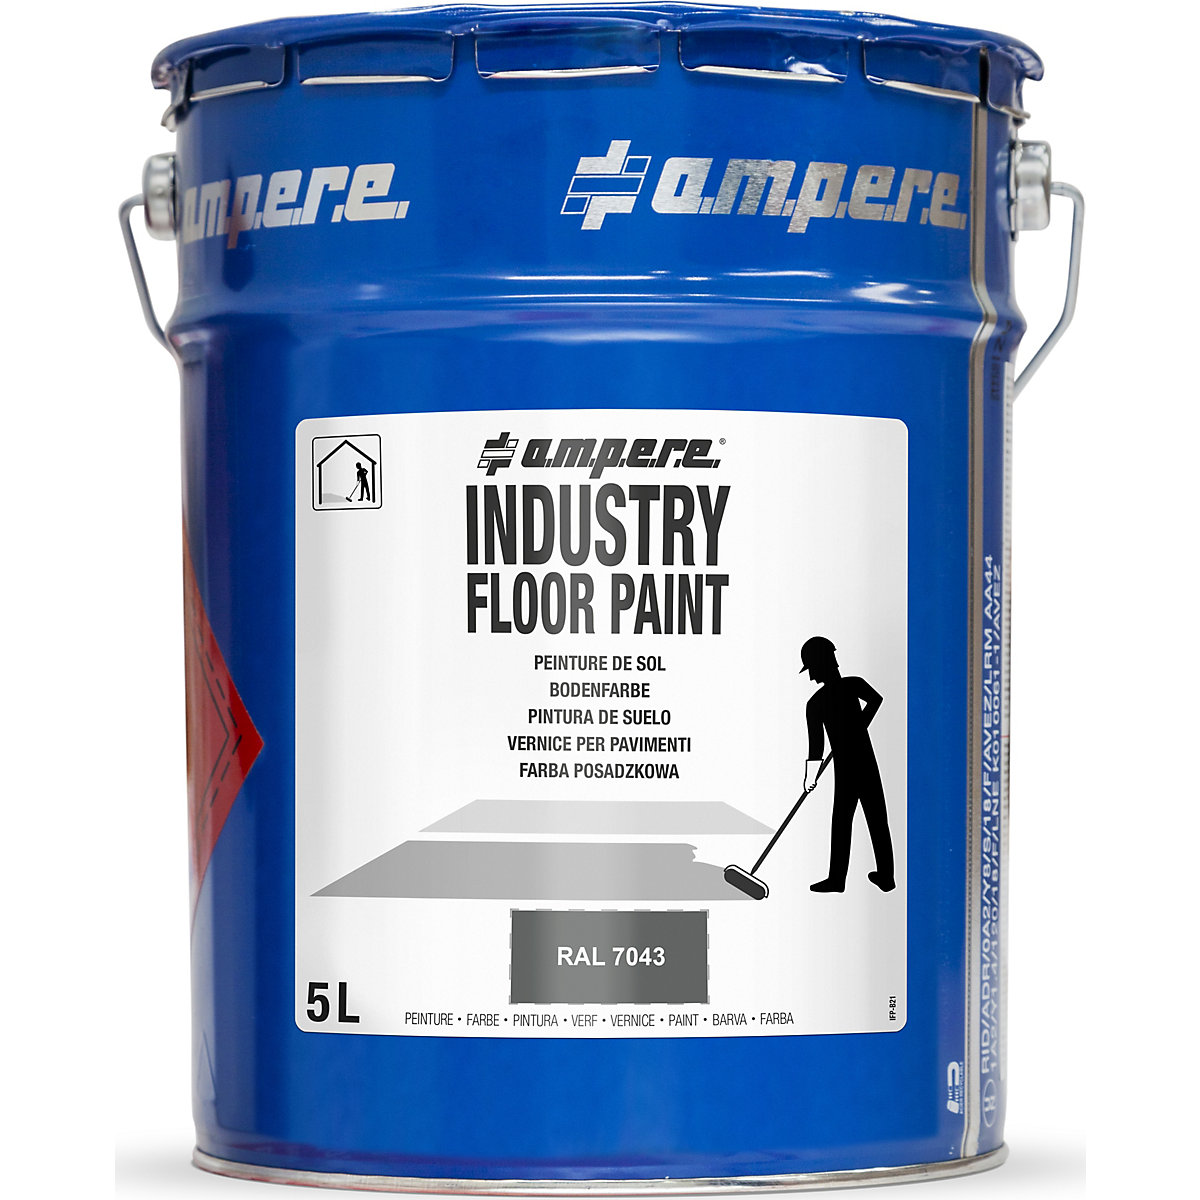 Barva pro podlahové značení Industry Floor Paint® – Ampere, objem 5 l, šedá-13